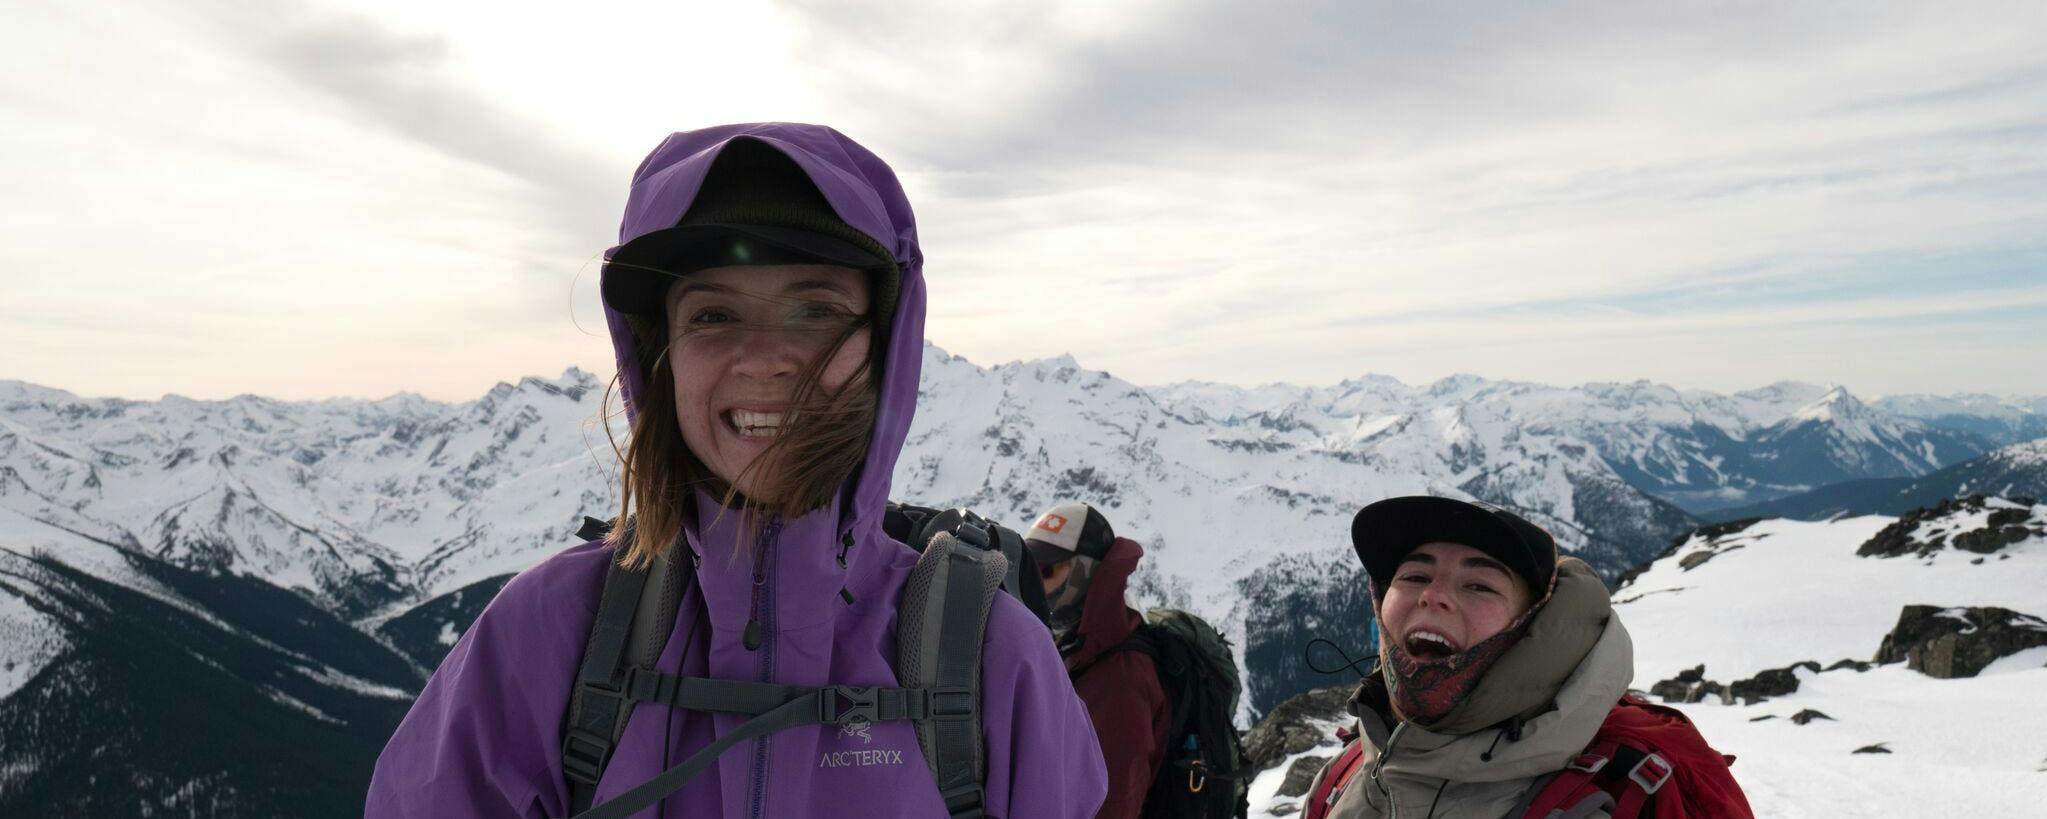 MEC member spotlight: Mountain Mentors’ Brett Trainor